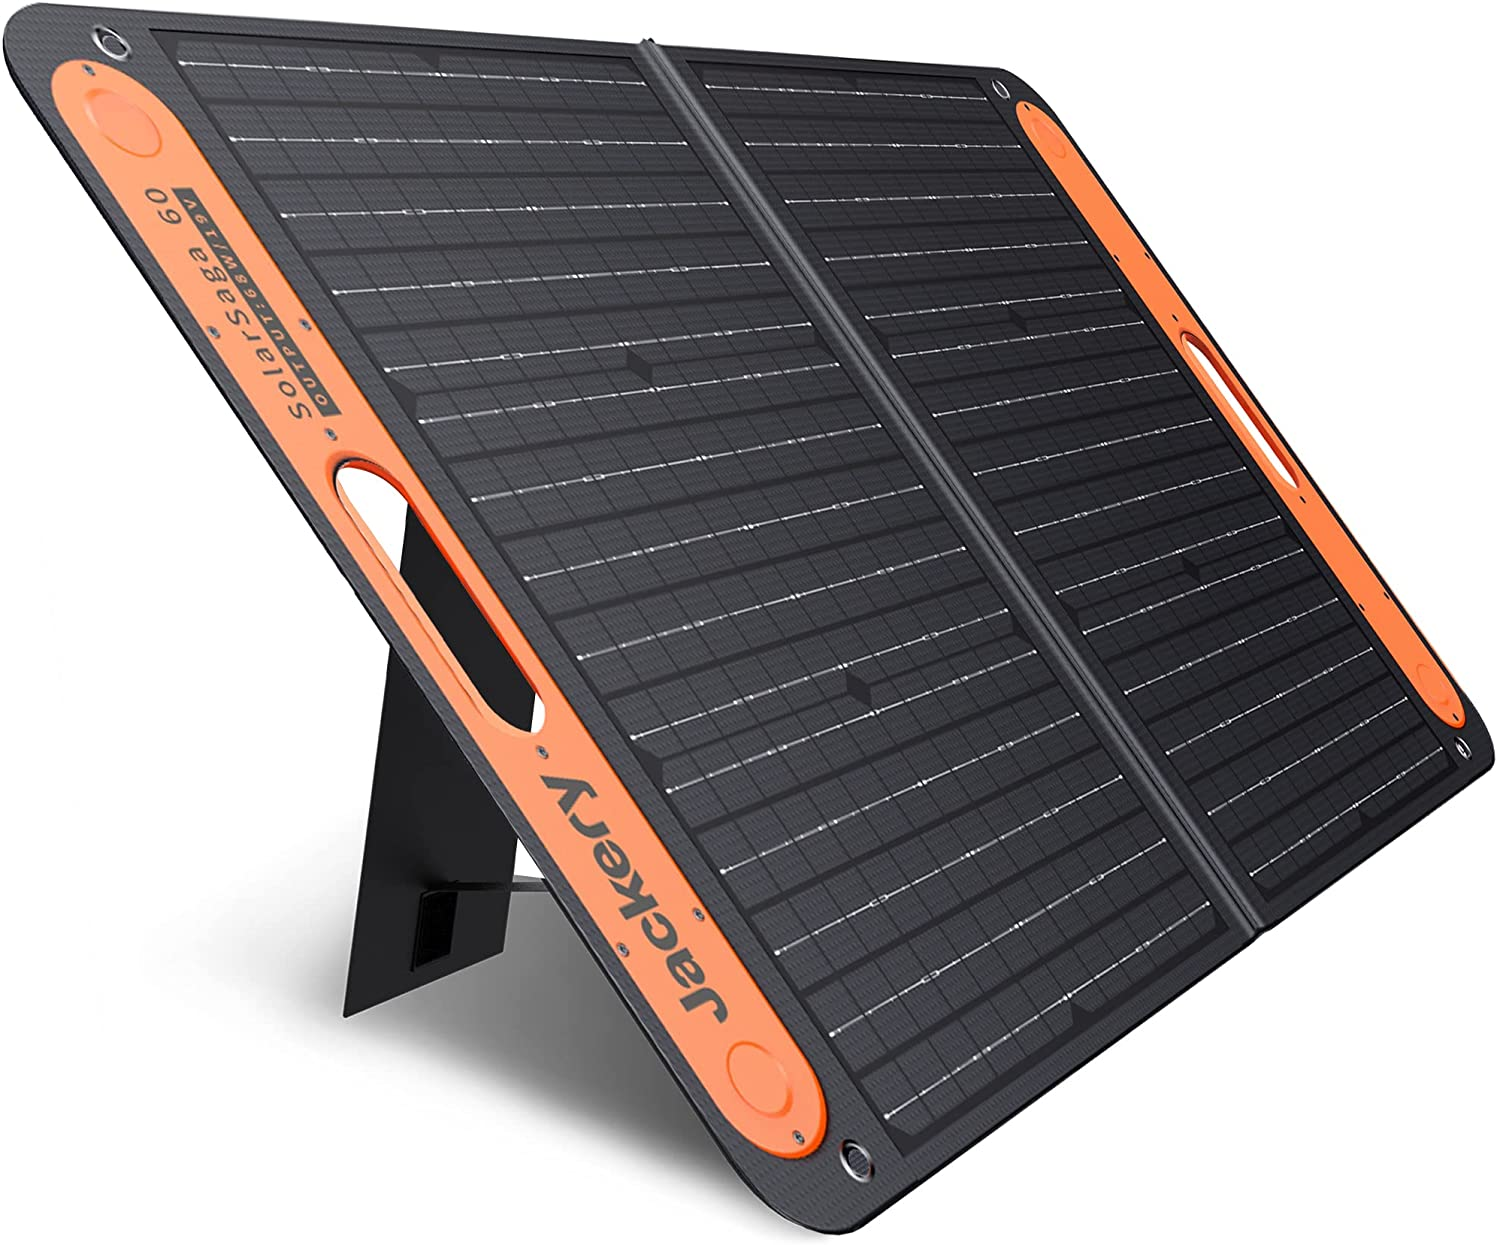  Jackery-Portable Solar Panel